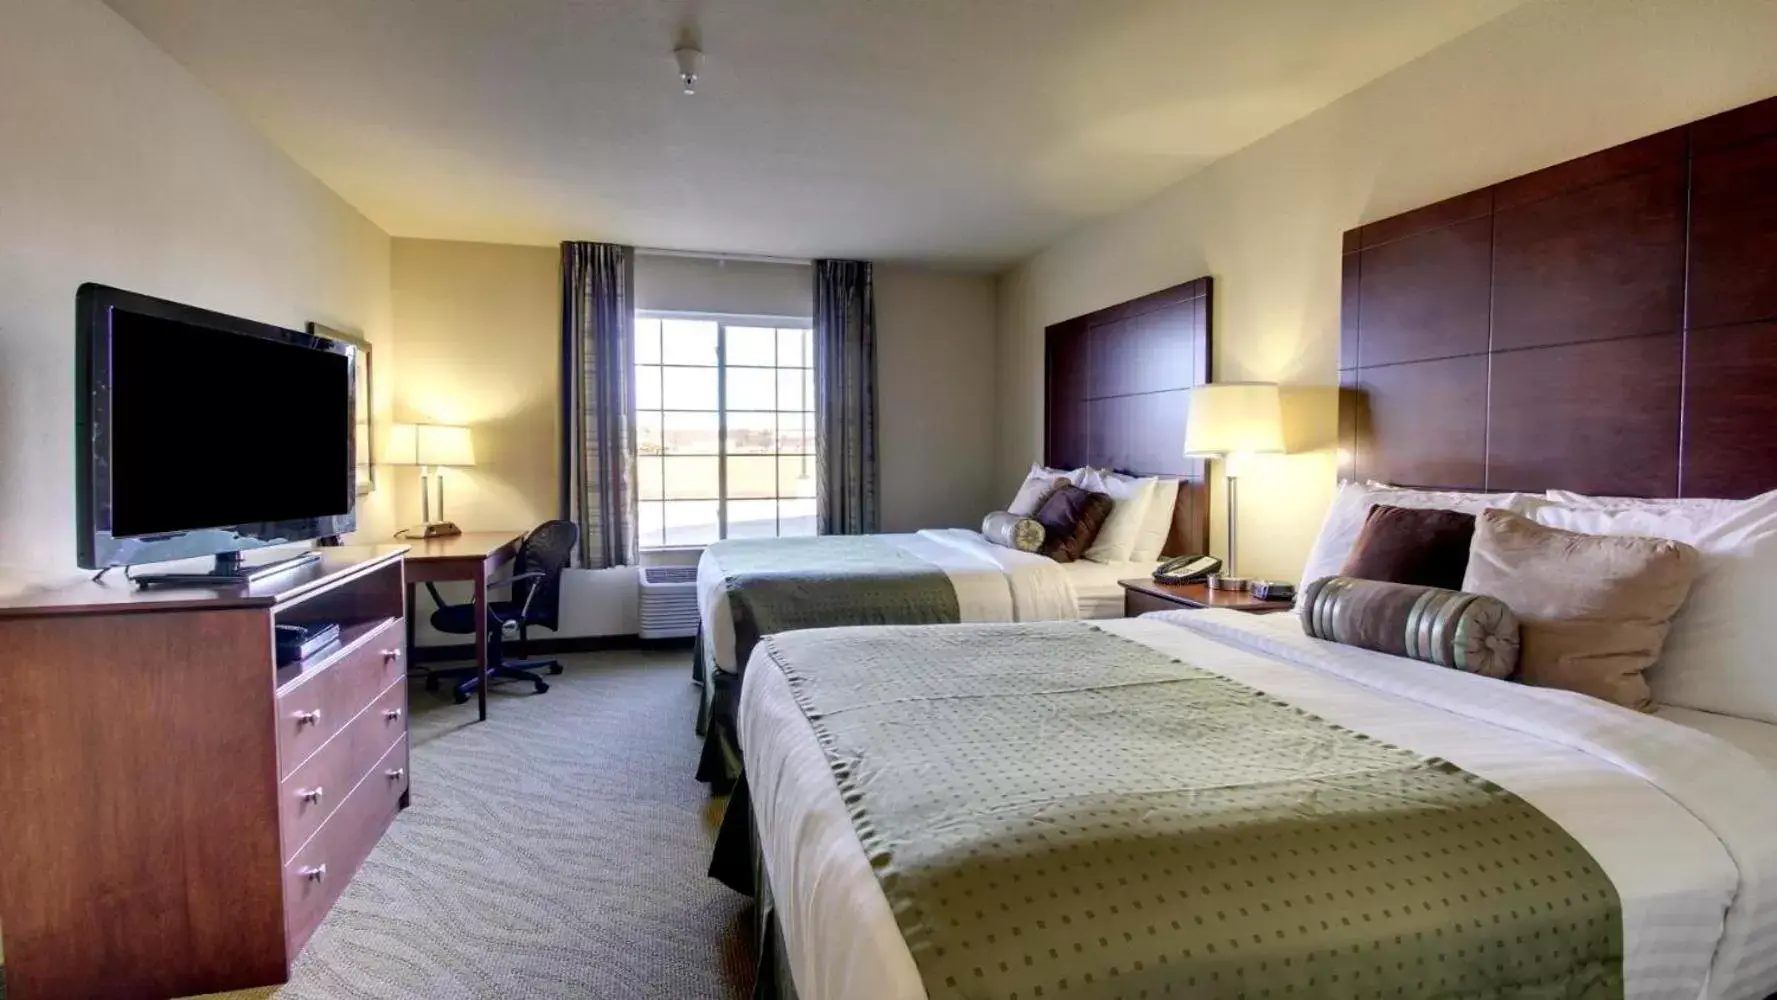 Queen Room with Two Queen Beds in Cobblestone Hotel - Wayne